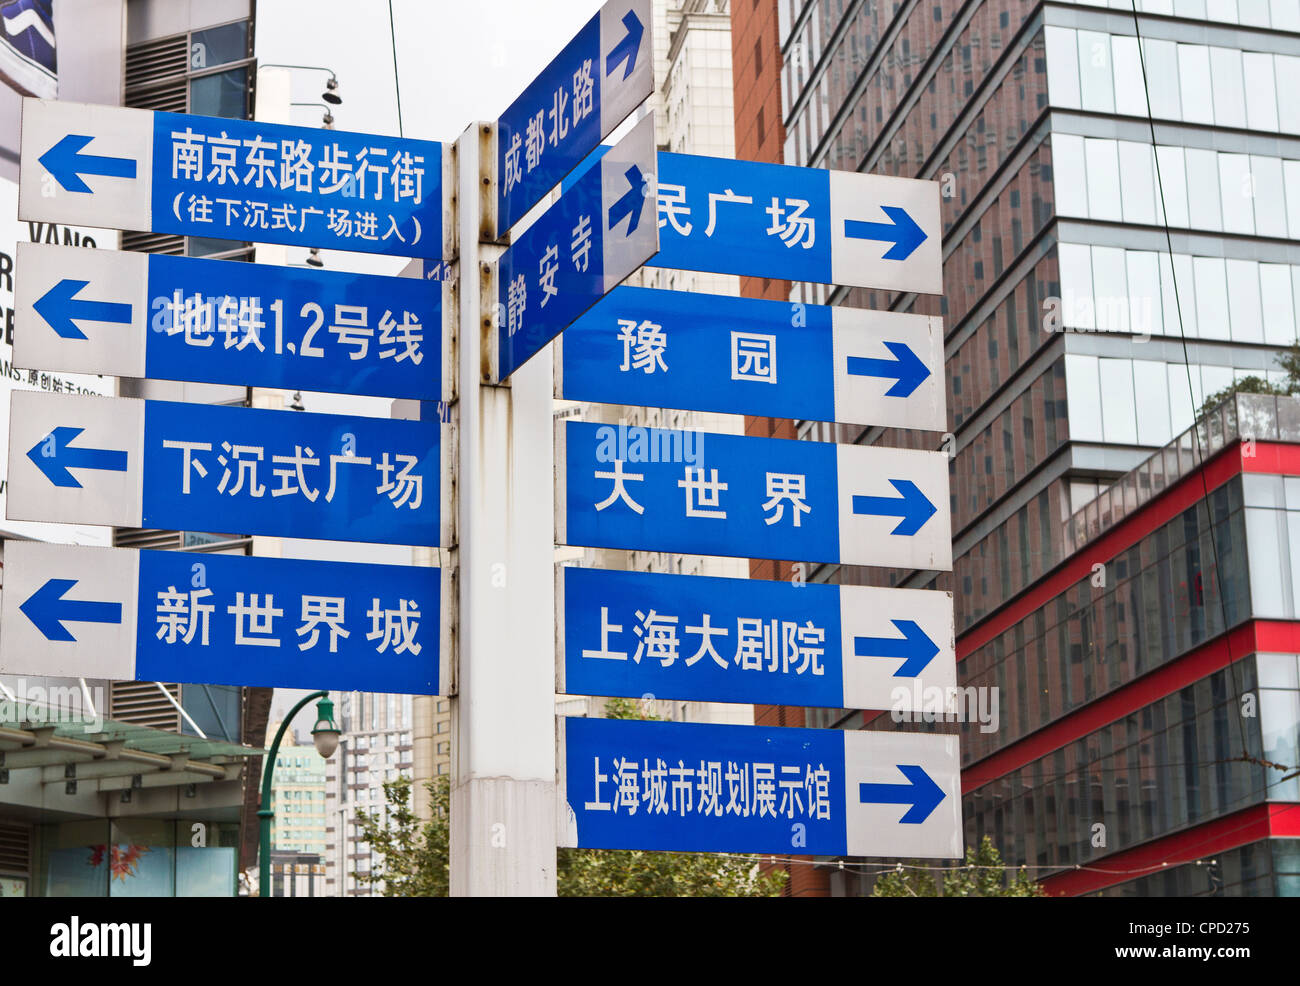 Les plaques de rue, Nanjing Road, Shanghai, China, Asia Banque D'Images